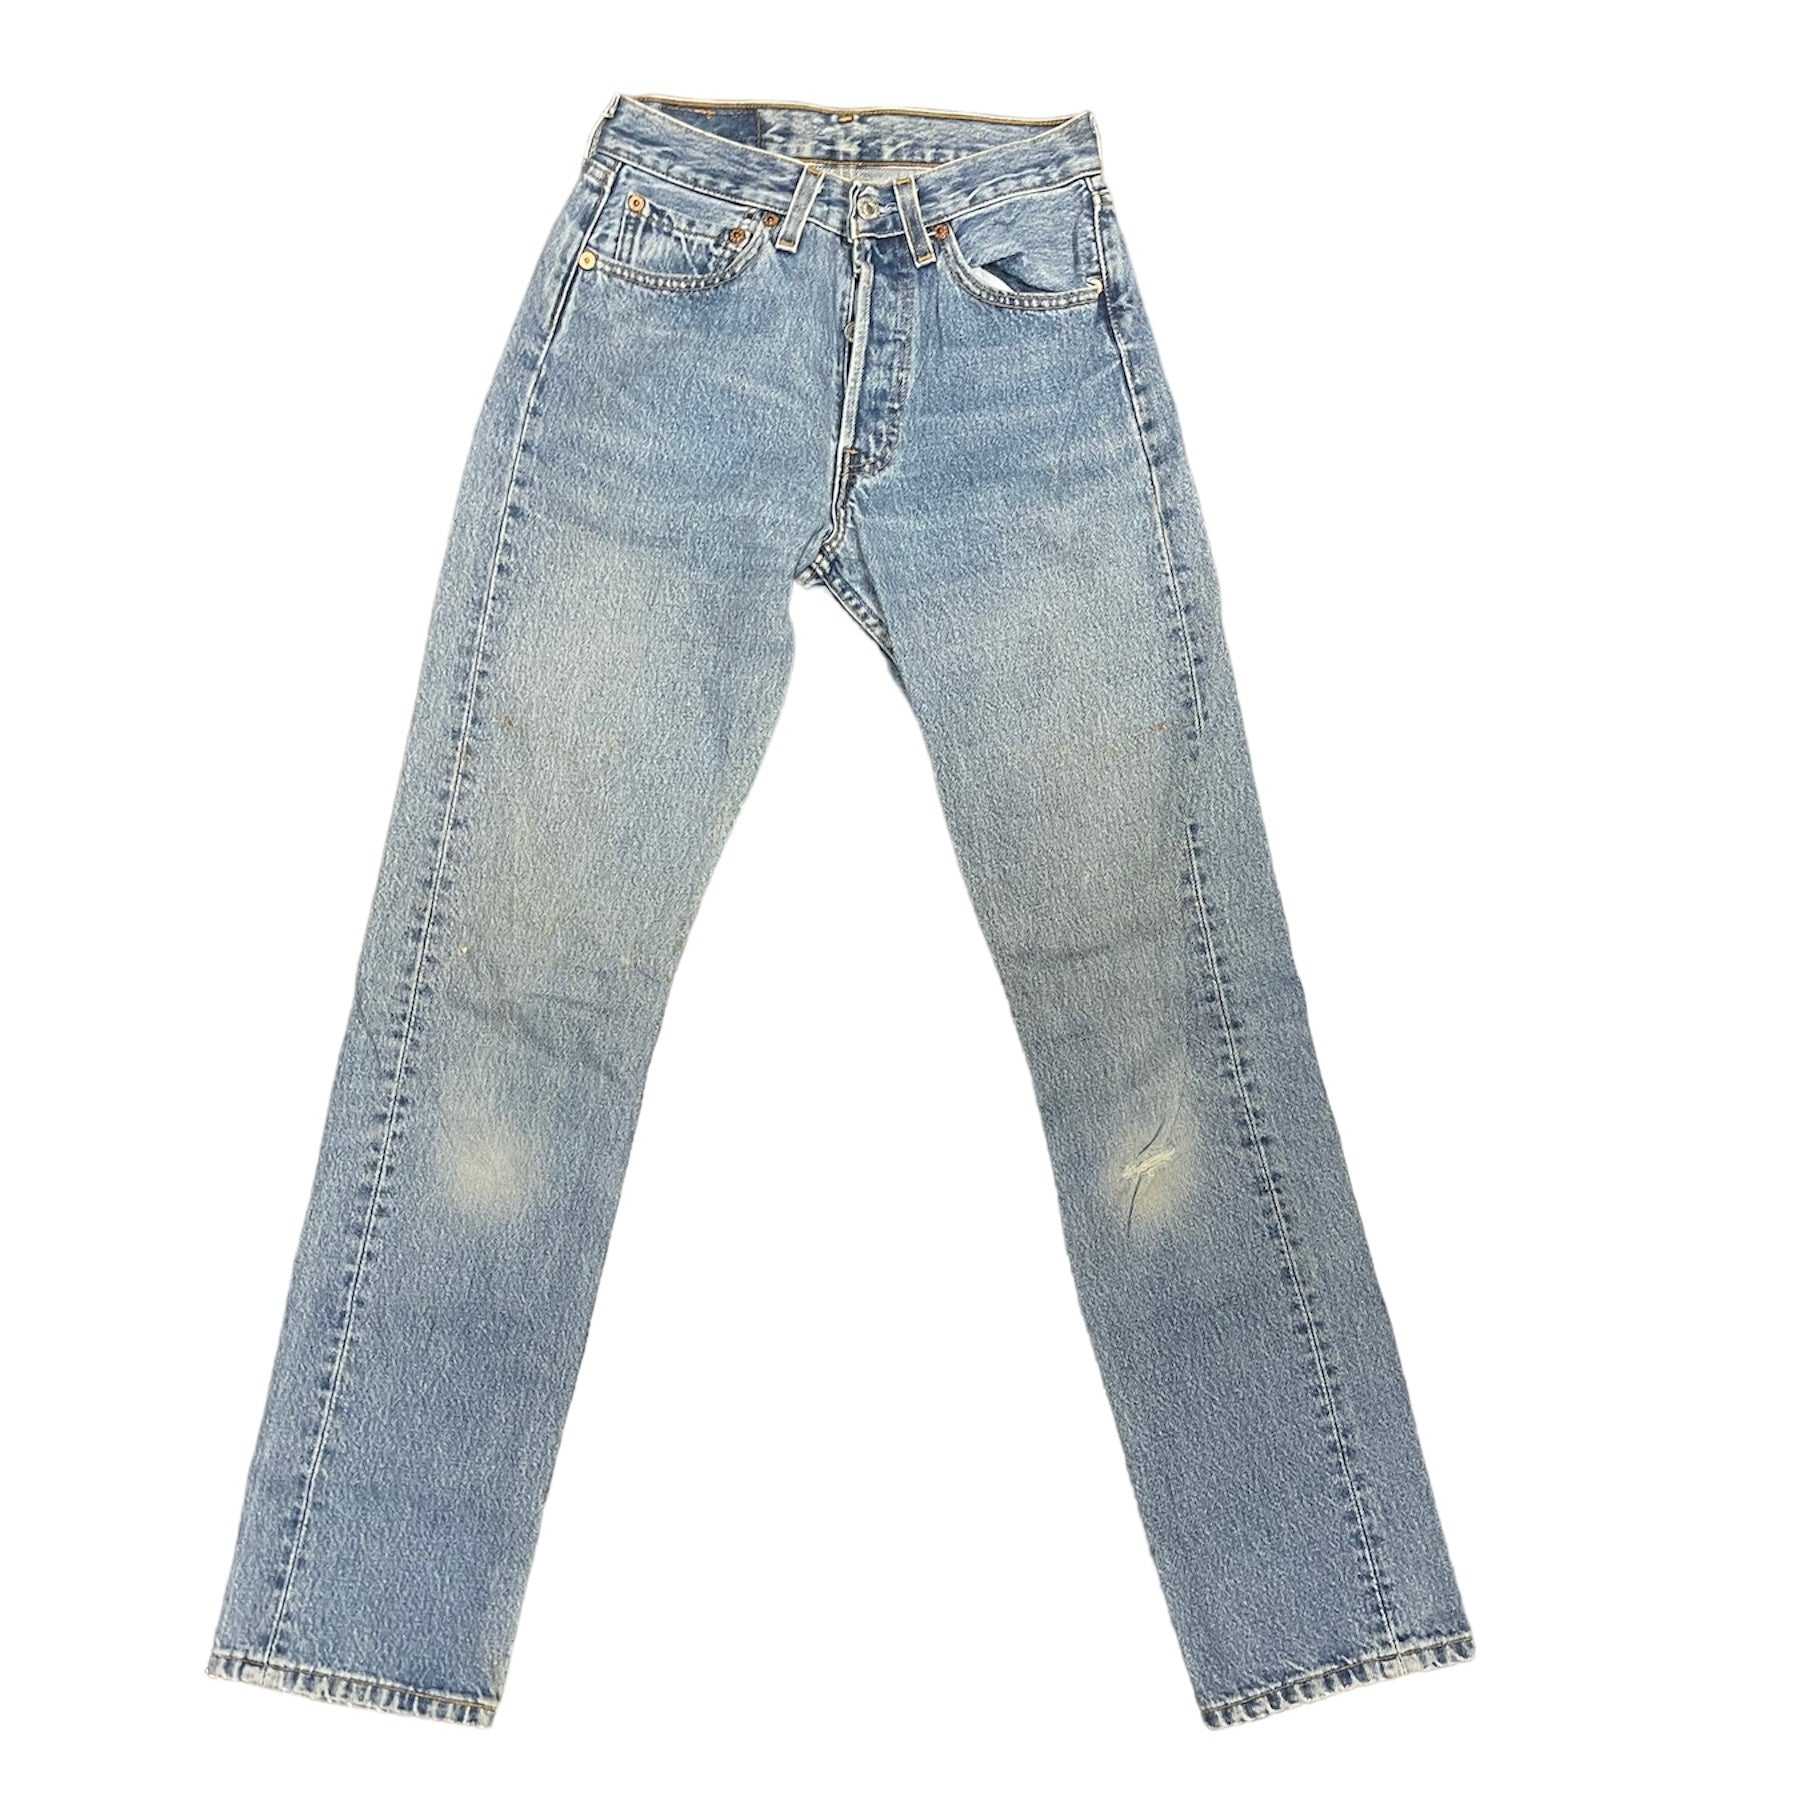 Vintage Levis 501 Light Blue Jeans (W)